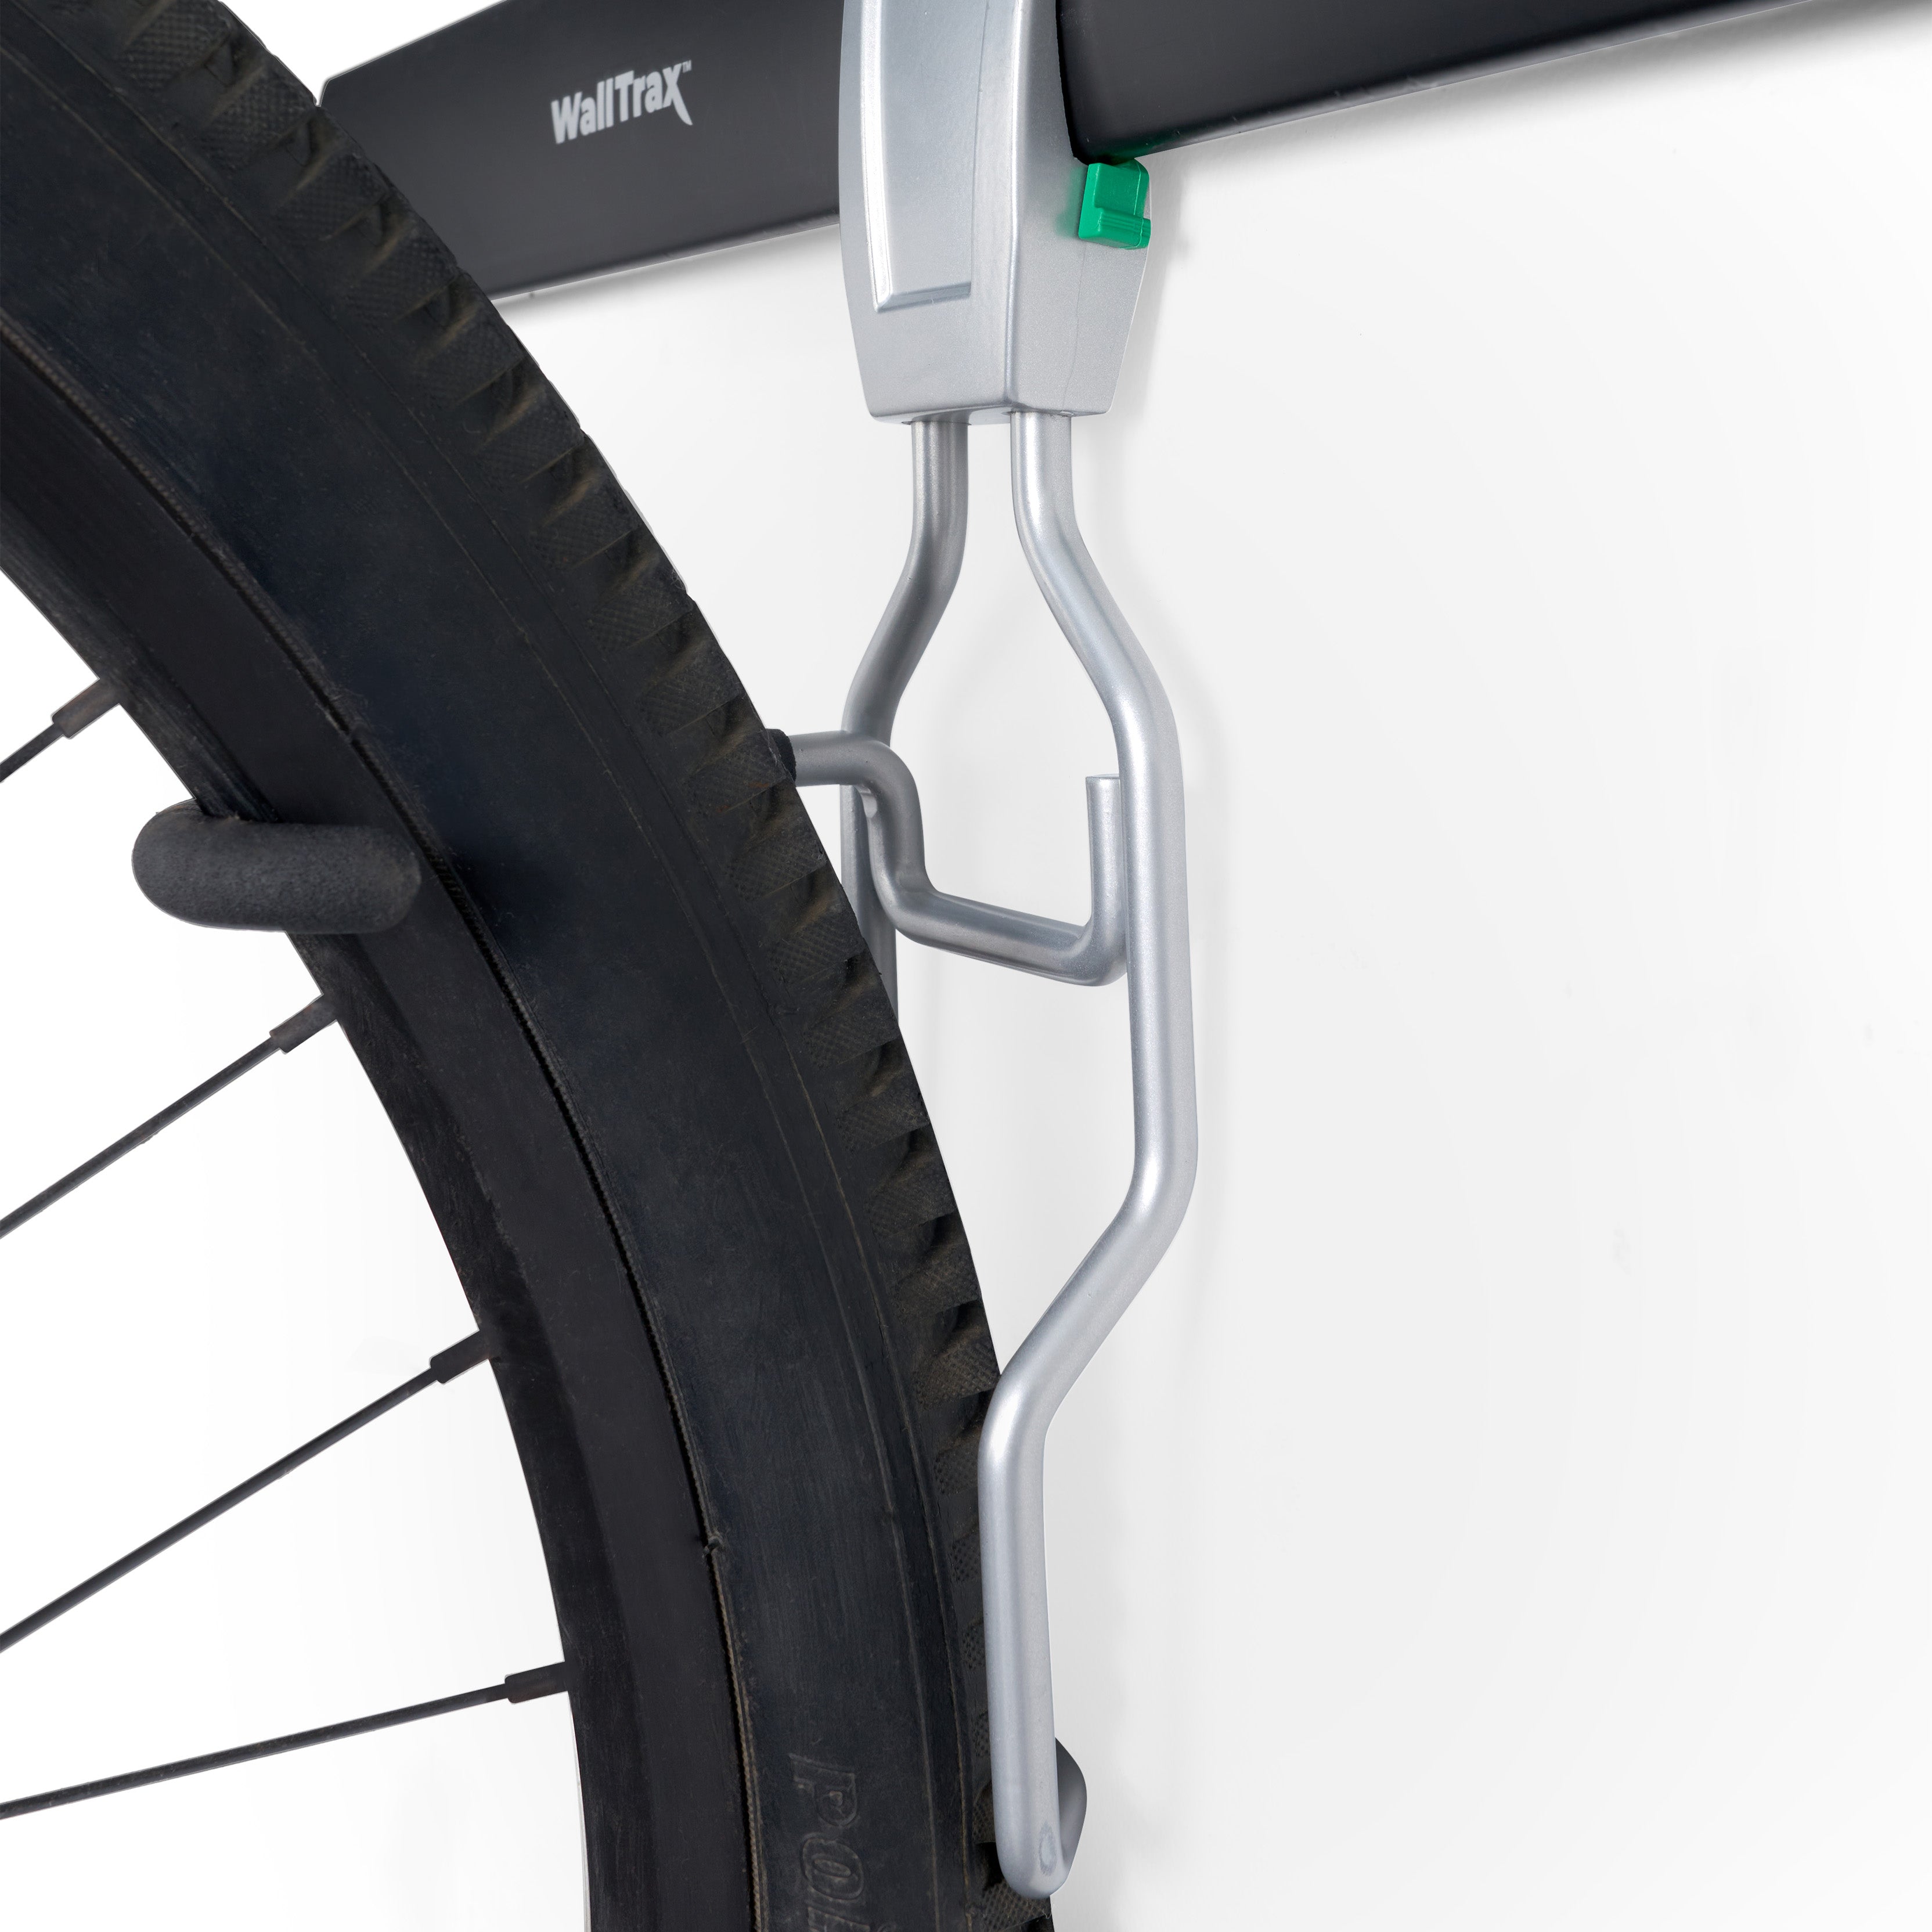 Bike Hooks For Garage Wall Storage System Vertical Hanger Vertical